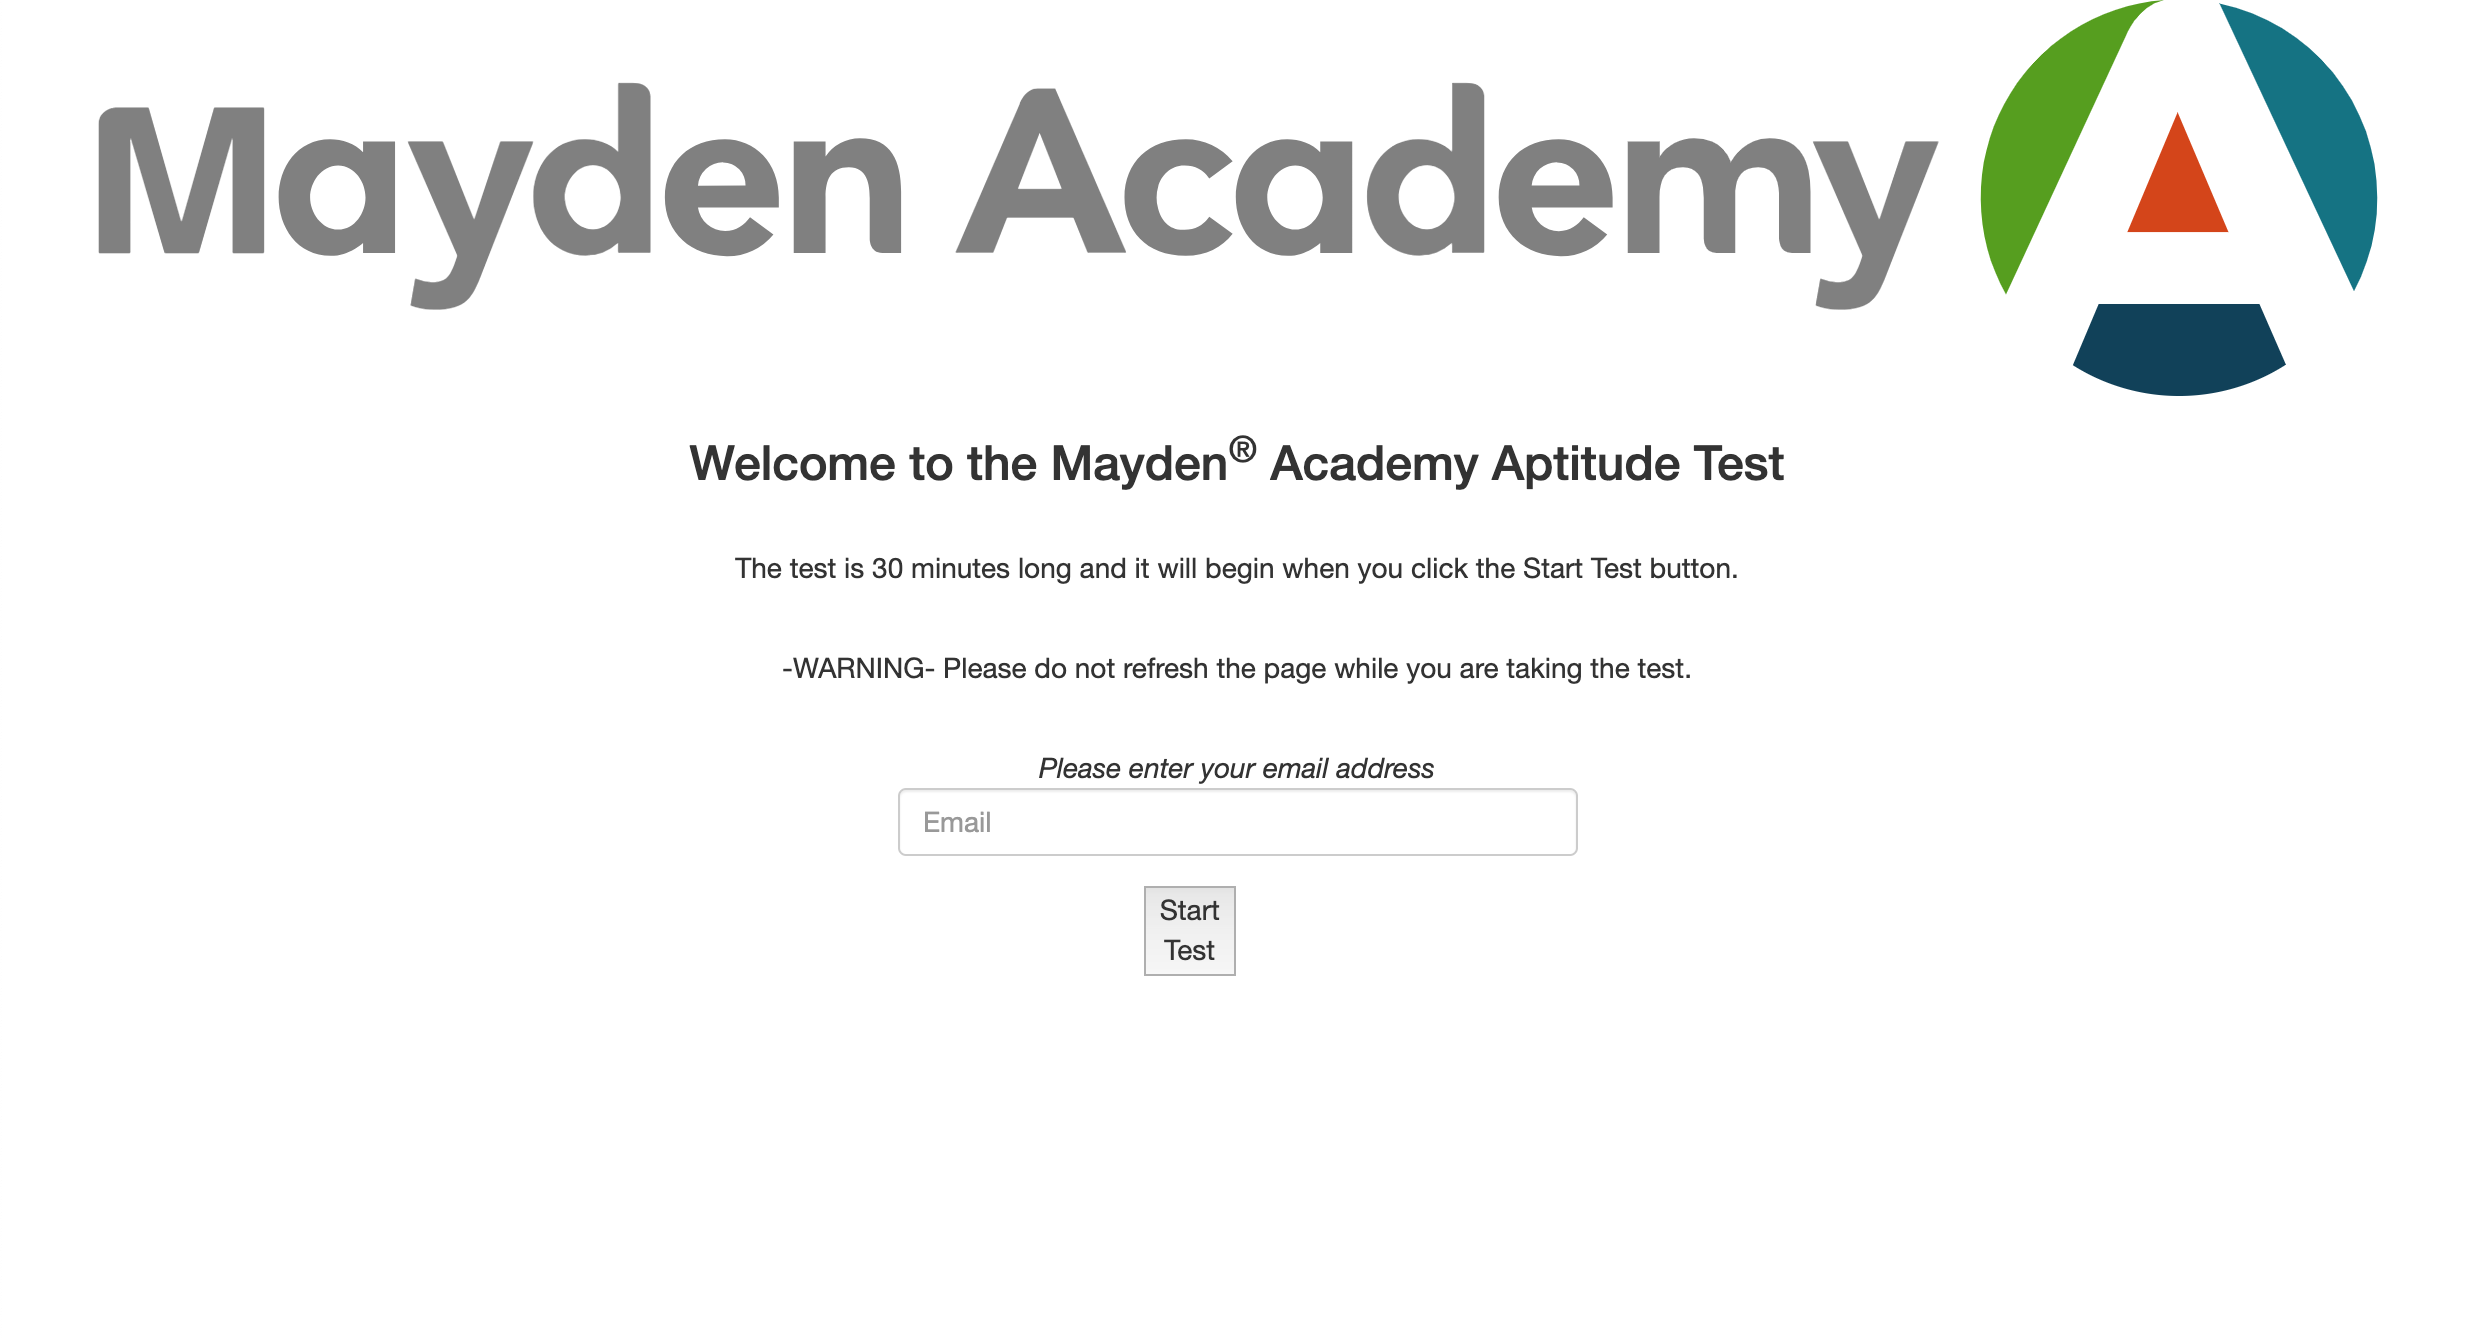 App Academy Aptitude Test